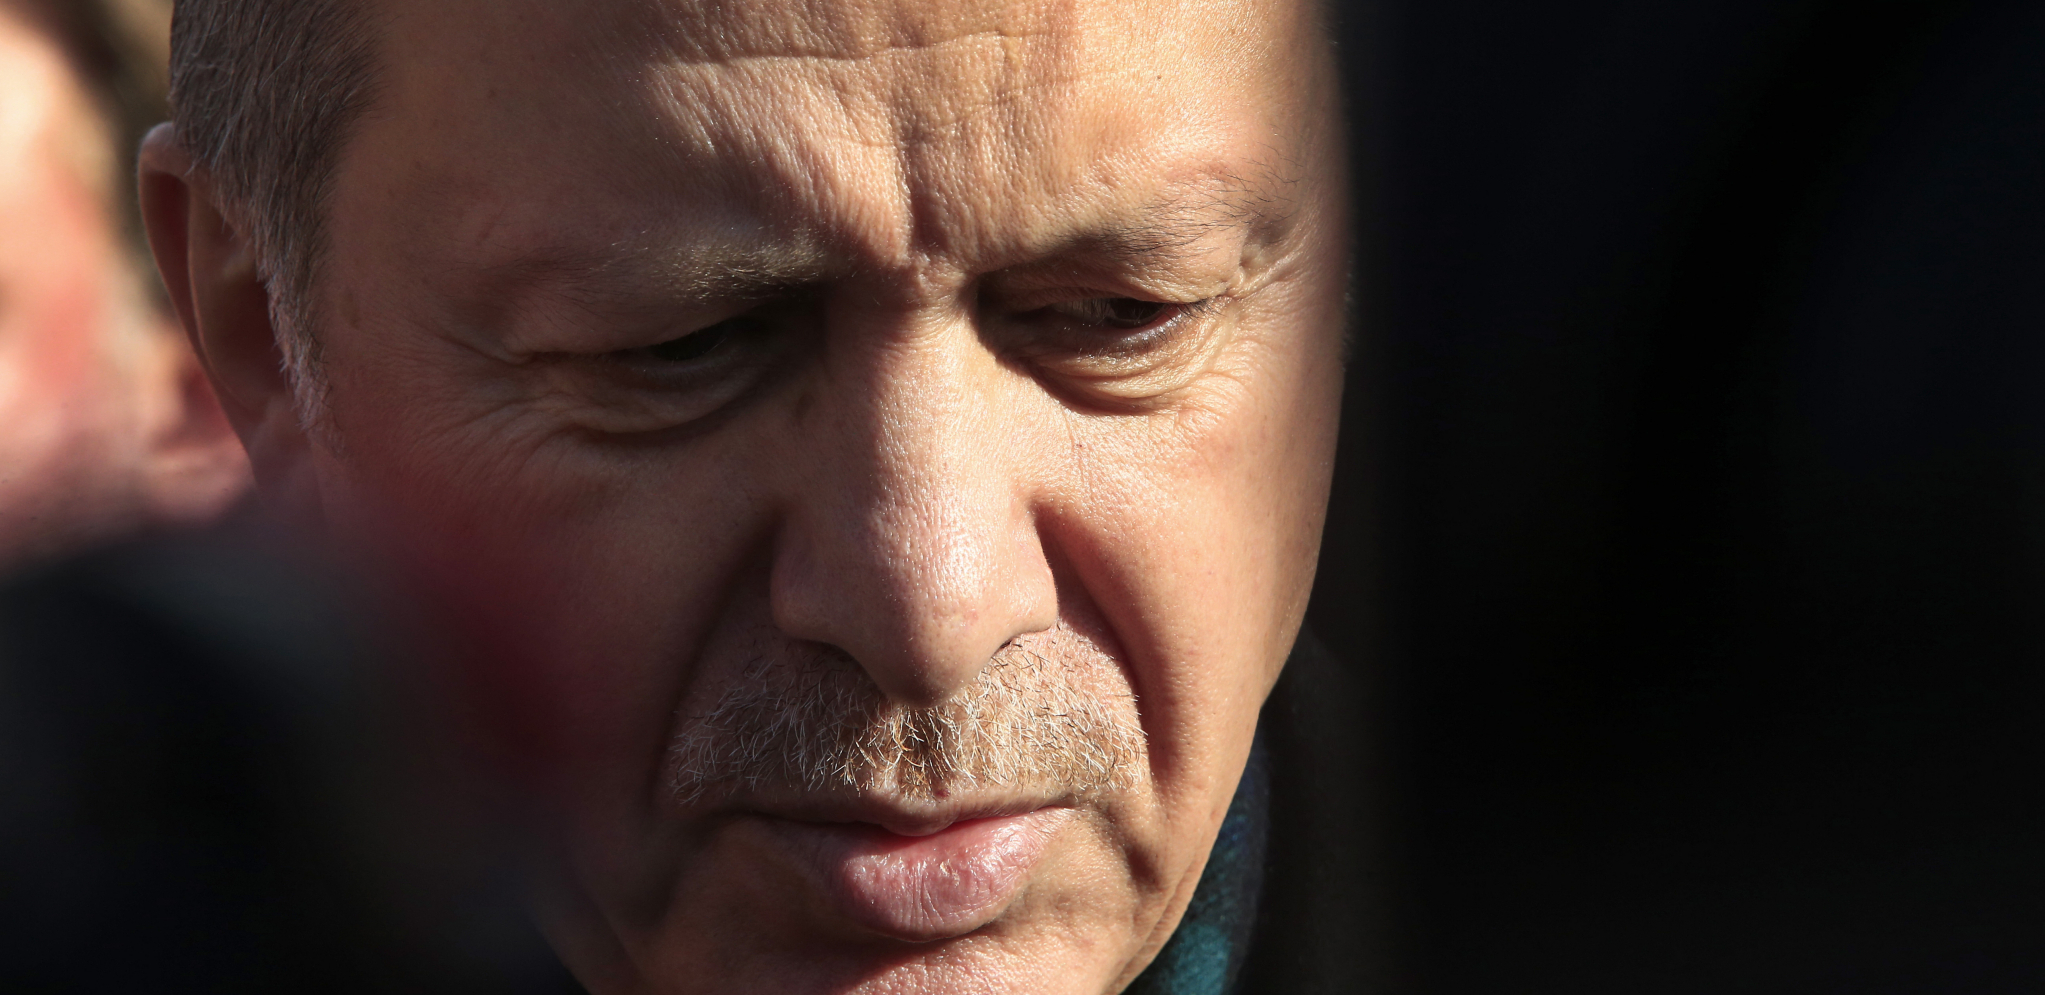 SVE GORE VESTI STIŽU IZ TURSKE Oglasio se Erdogan i saopštio uznemirujuće podatke